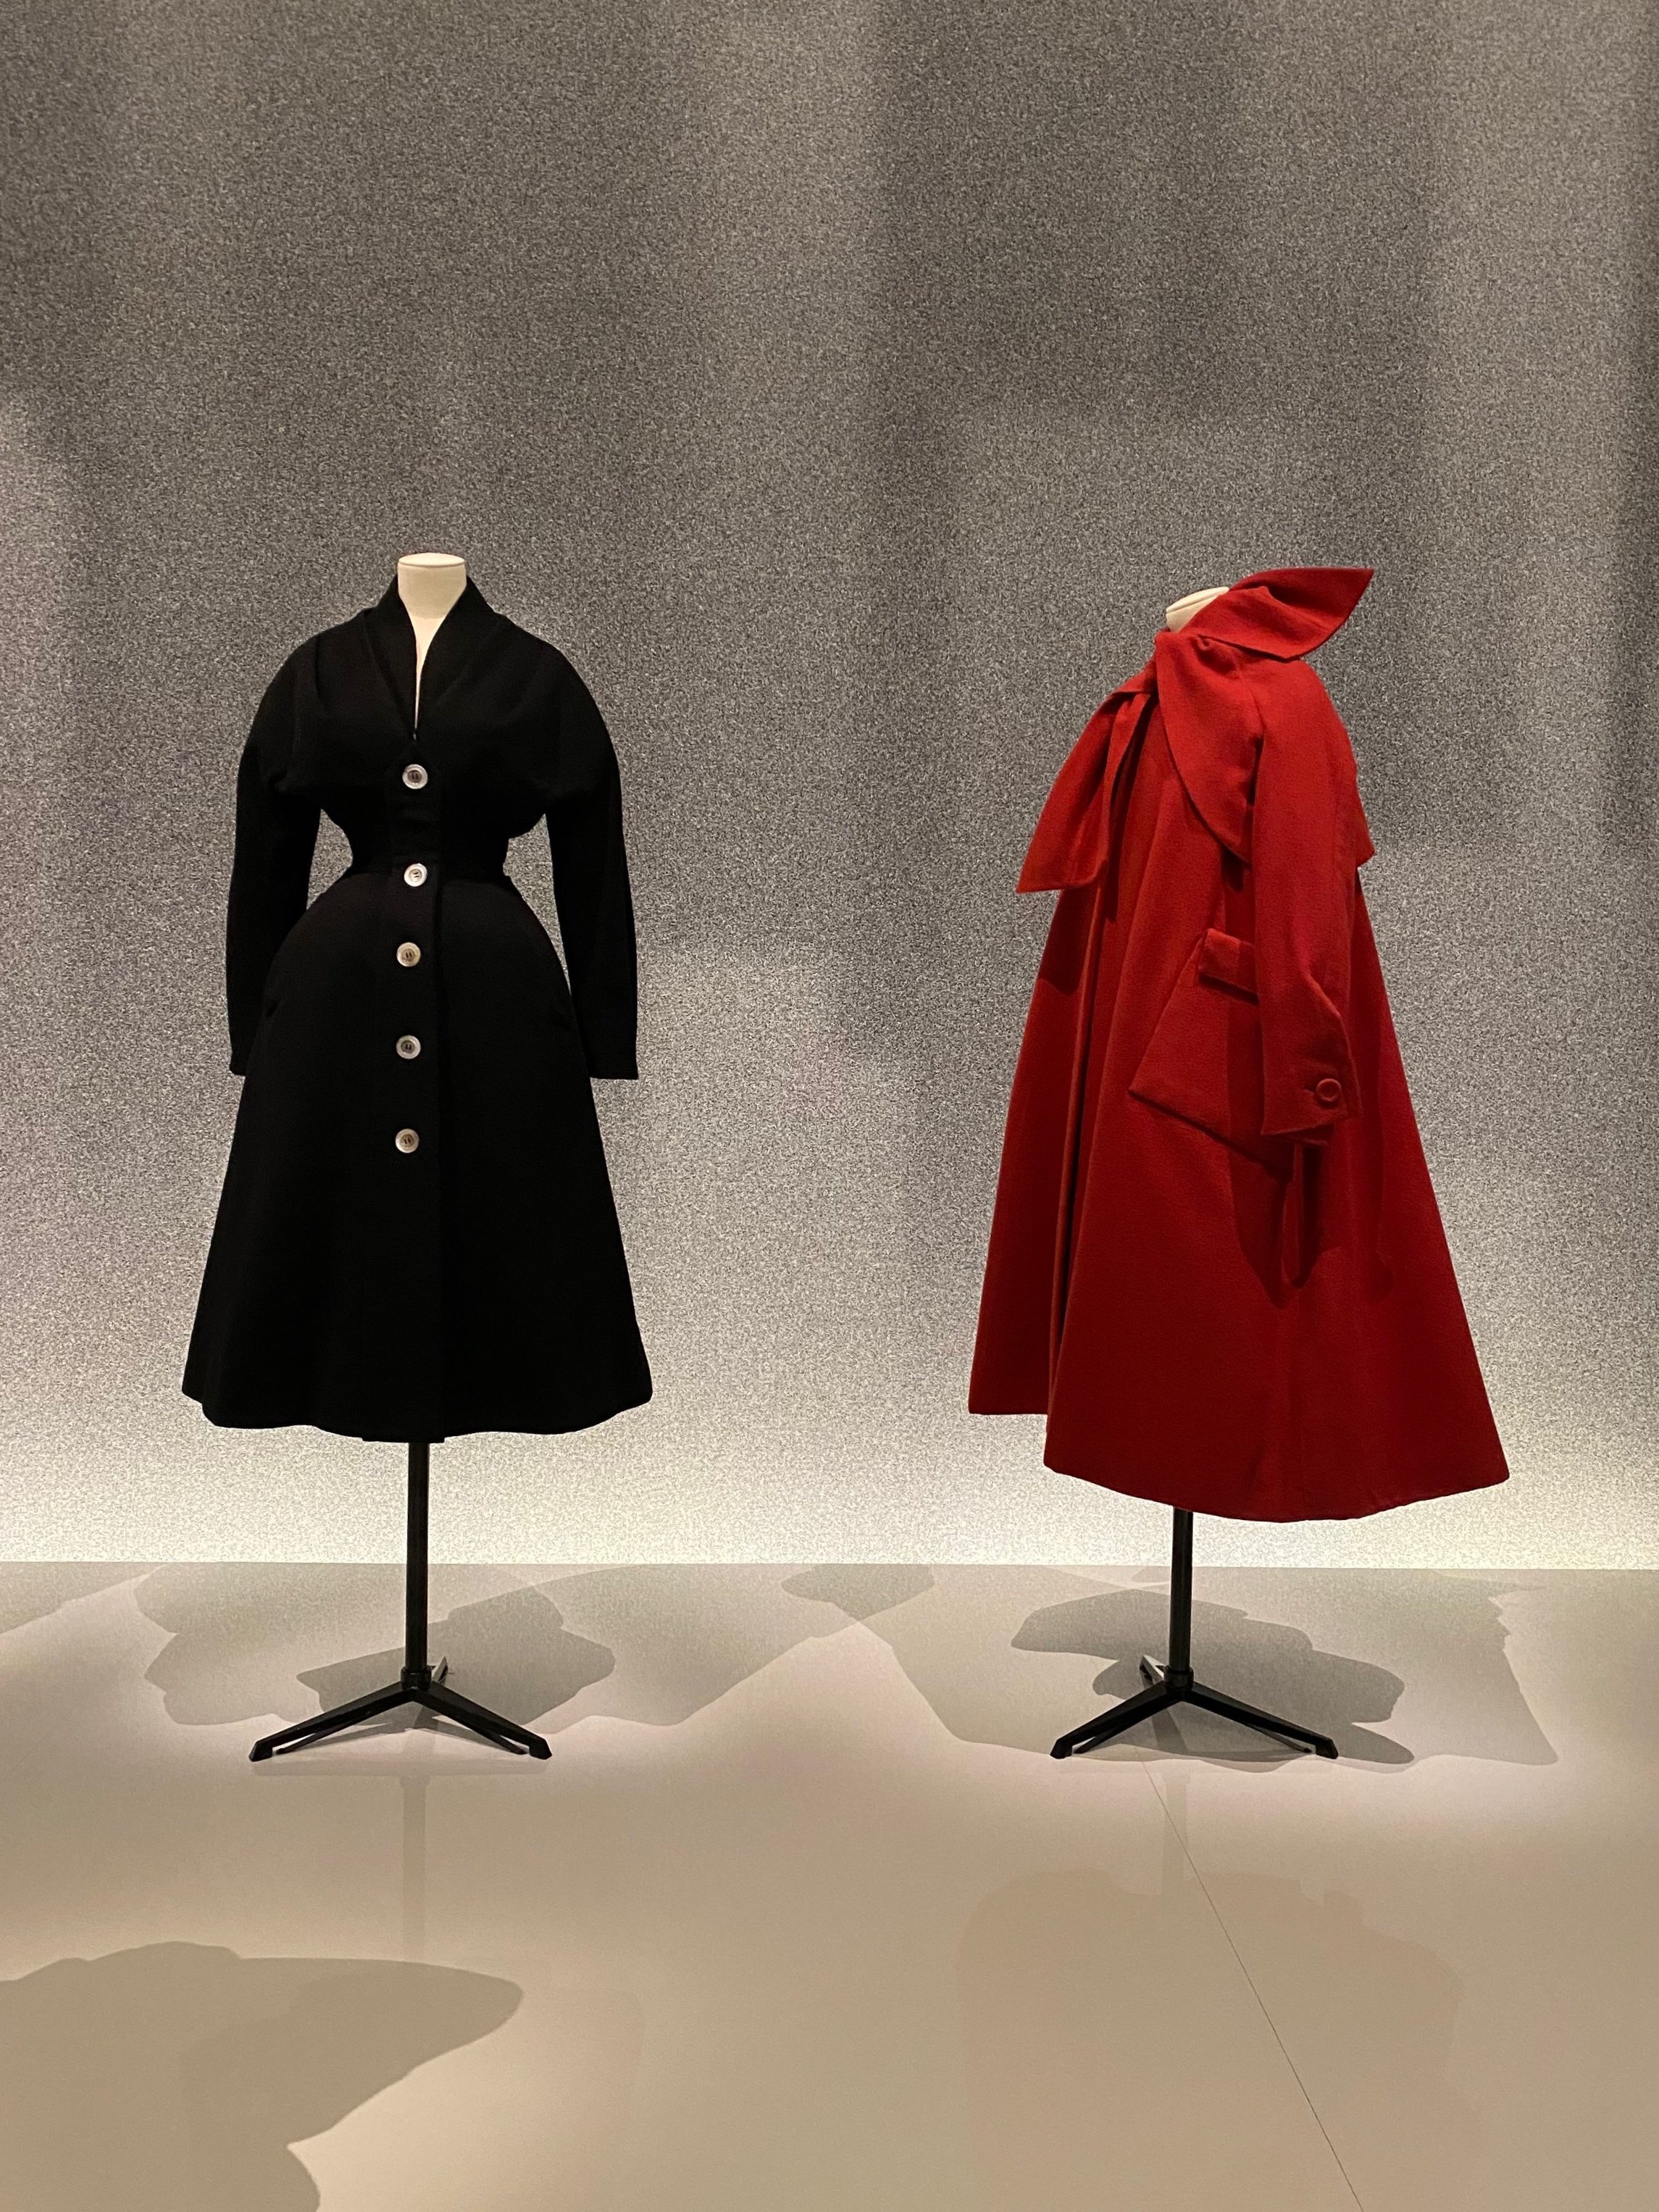 Luxury Brand Christian Dior exhibits at Musée des Arts Décoratifs